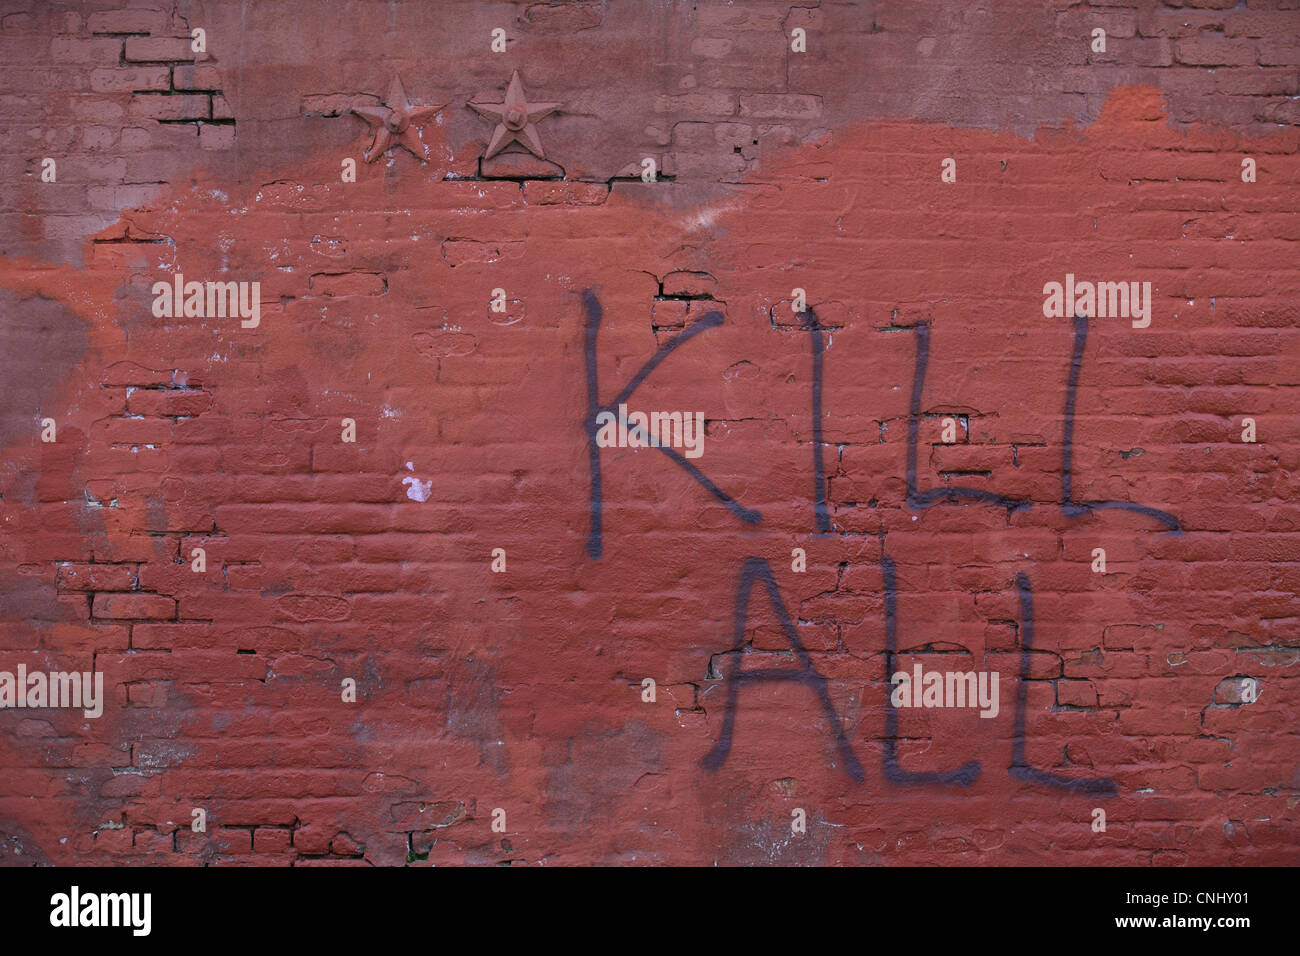 Violento odioso graffiti di incitamento alla violenza o omicidio, 'uccidere tutti i", scritta sul muro rosso a Williamsburg, Brooklyn, New York, Stati Uniti d'America Foto Stock